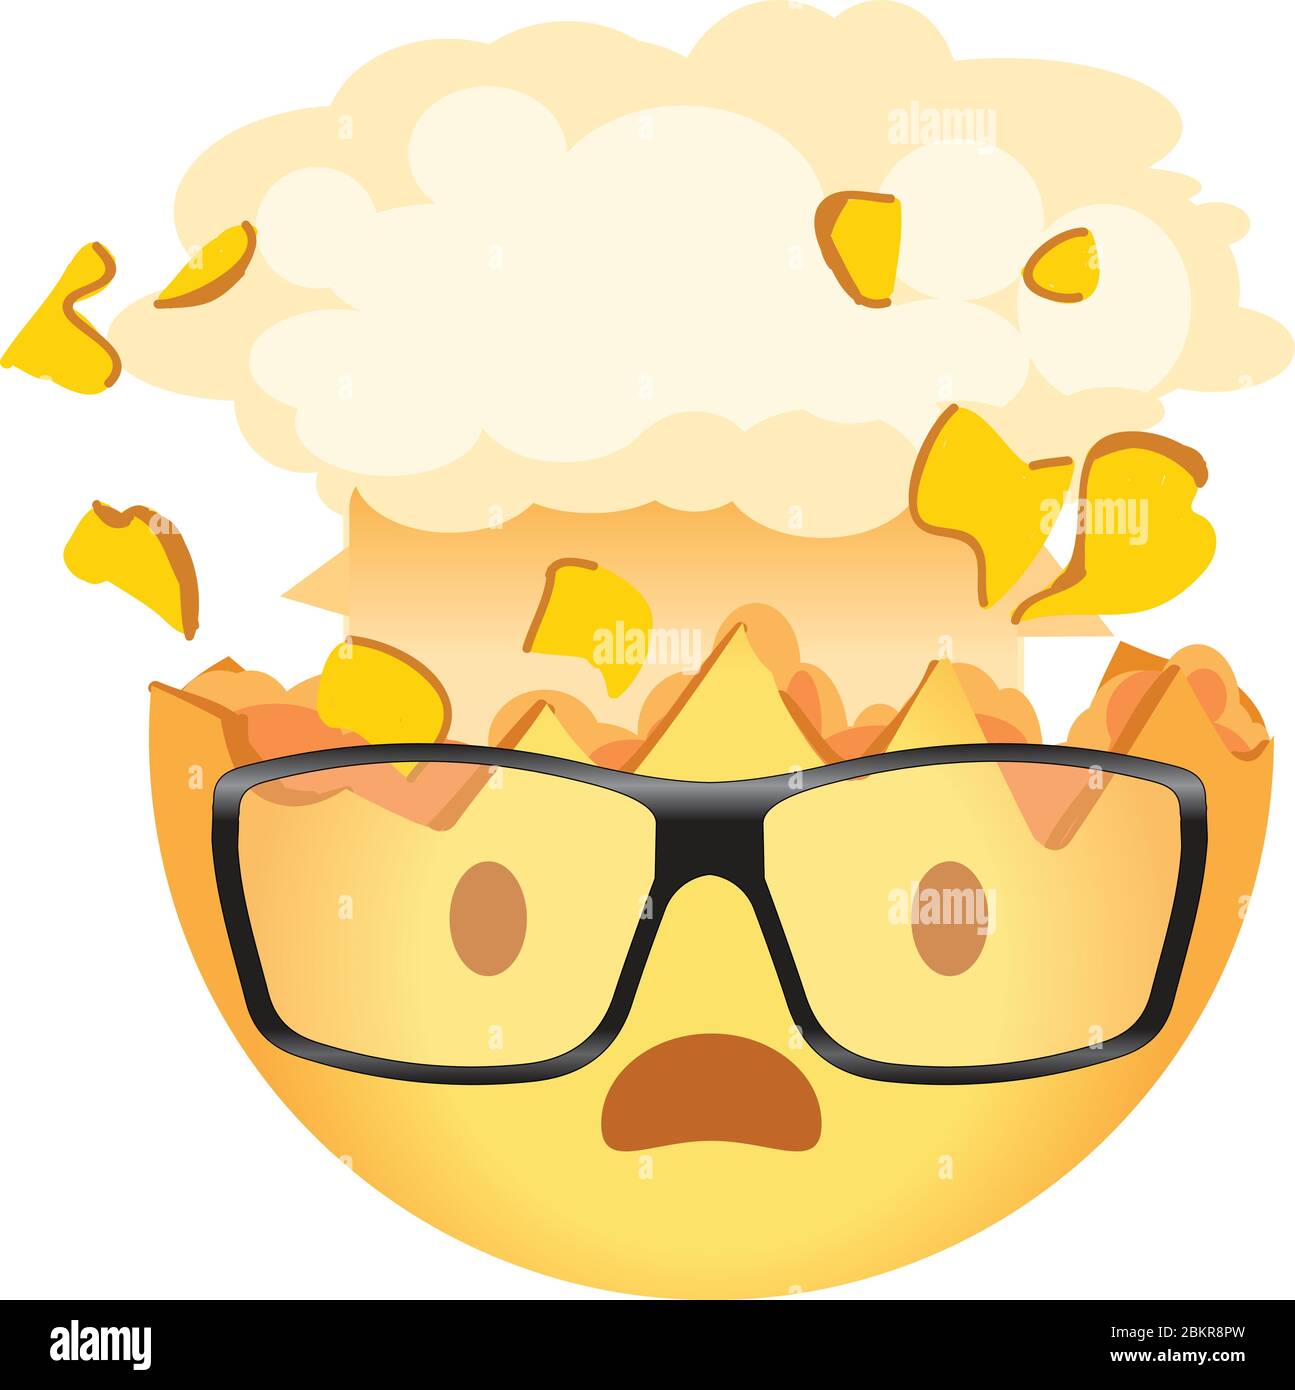 Schockierte Emoji tragen eine Brille. Explodierender Kopf Nerd Emoticon. Gelbes Gesicht mit einem offenen Mund, trägt eine Brille und die Spitze des Kopfes explodiert in der Stock Vektor